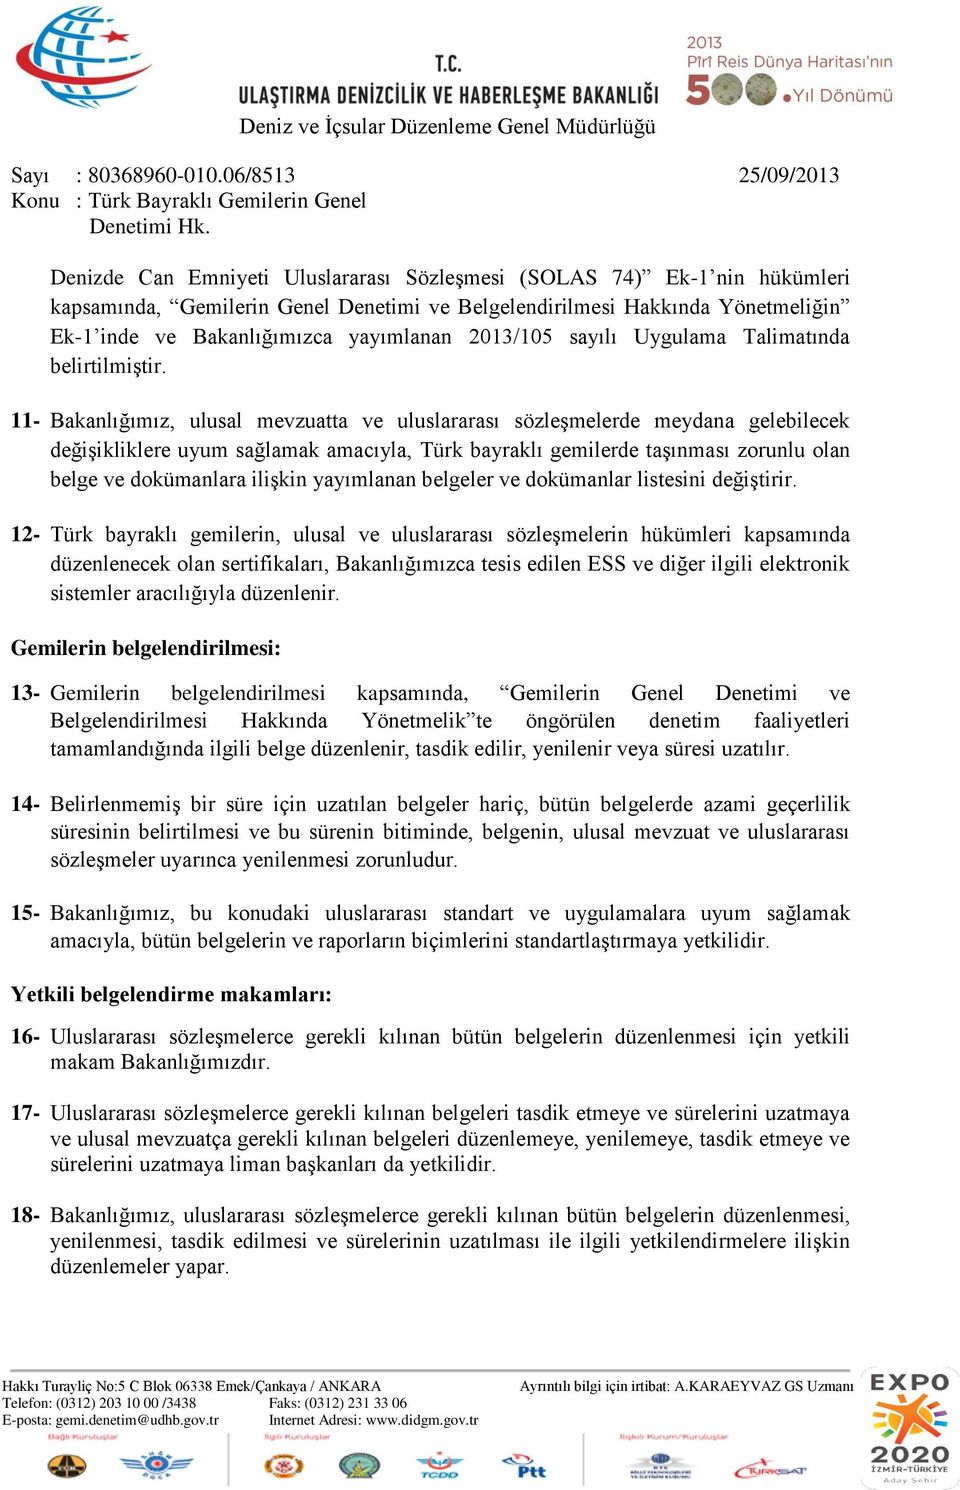 11- Bakanlığımız, ulusal mevzuatta ve uluslararası sözleşmelerde meydana gelebilecek değişikliklere uyum sağlamak amacıyla, Türk bayraklı gemilerde taşınması zorunlu olan belge ve dokümanlara ilişkin